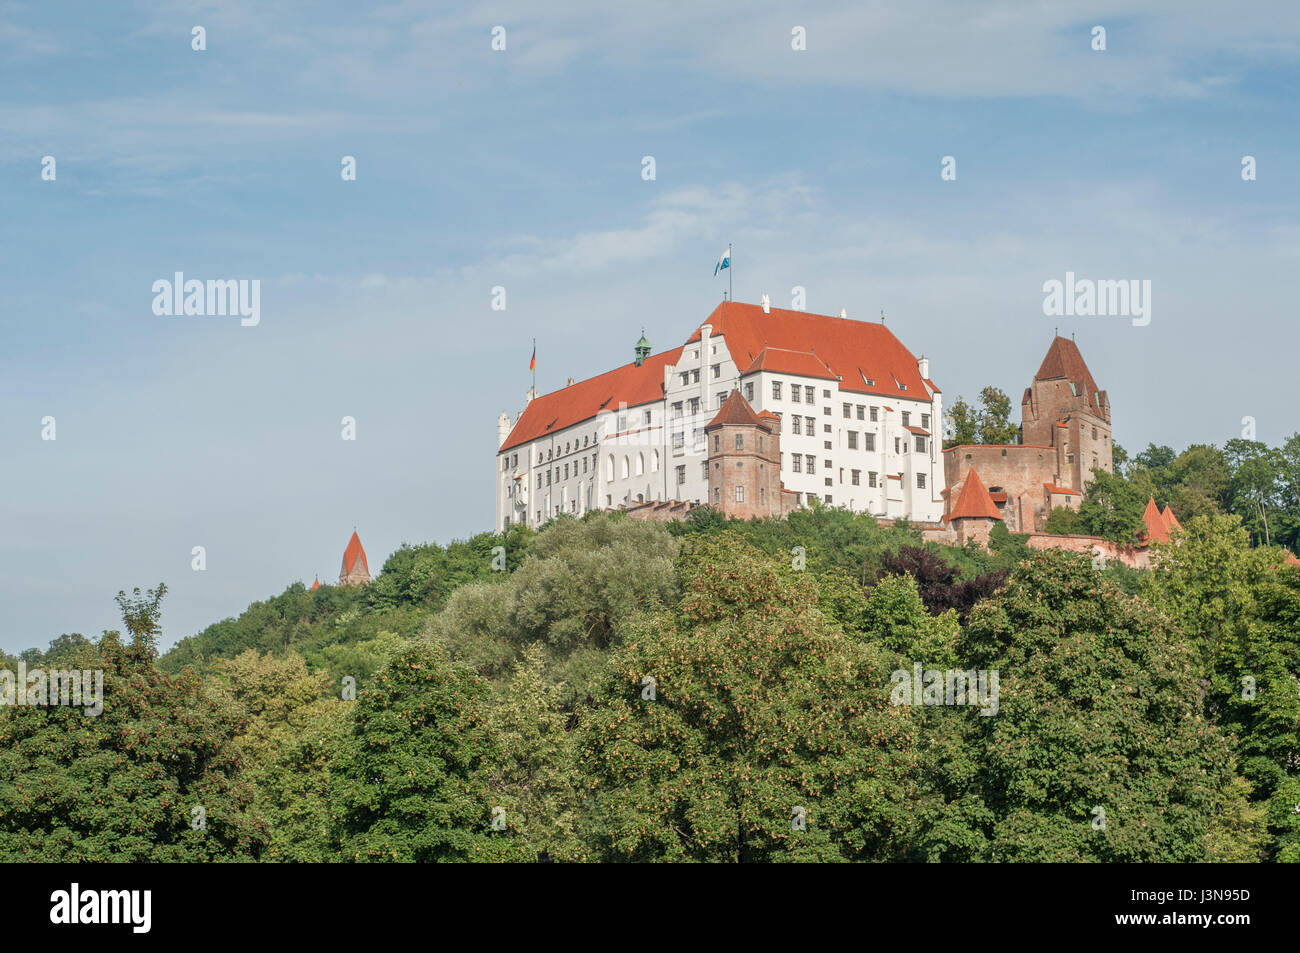 Castle Trausnitz, Landshut, Bavaria, Germany Stock Photo